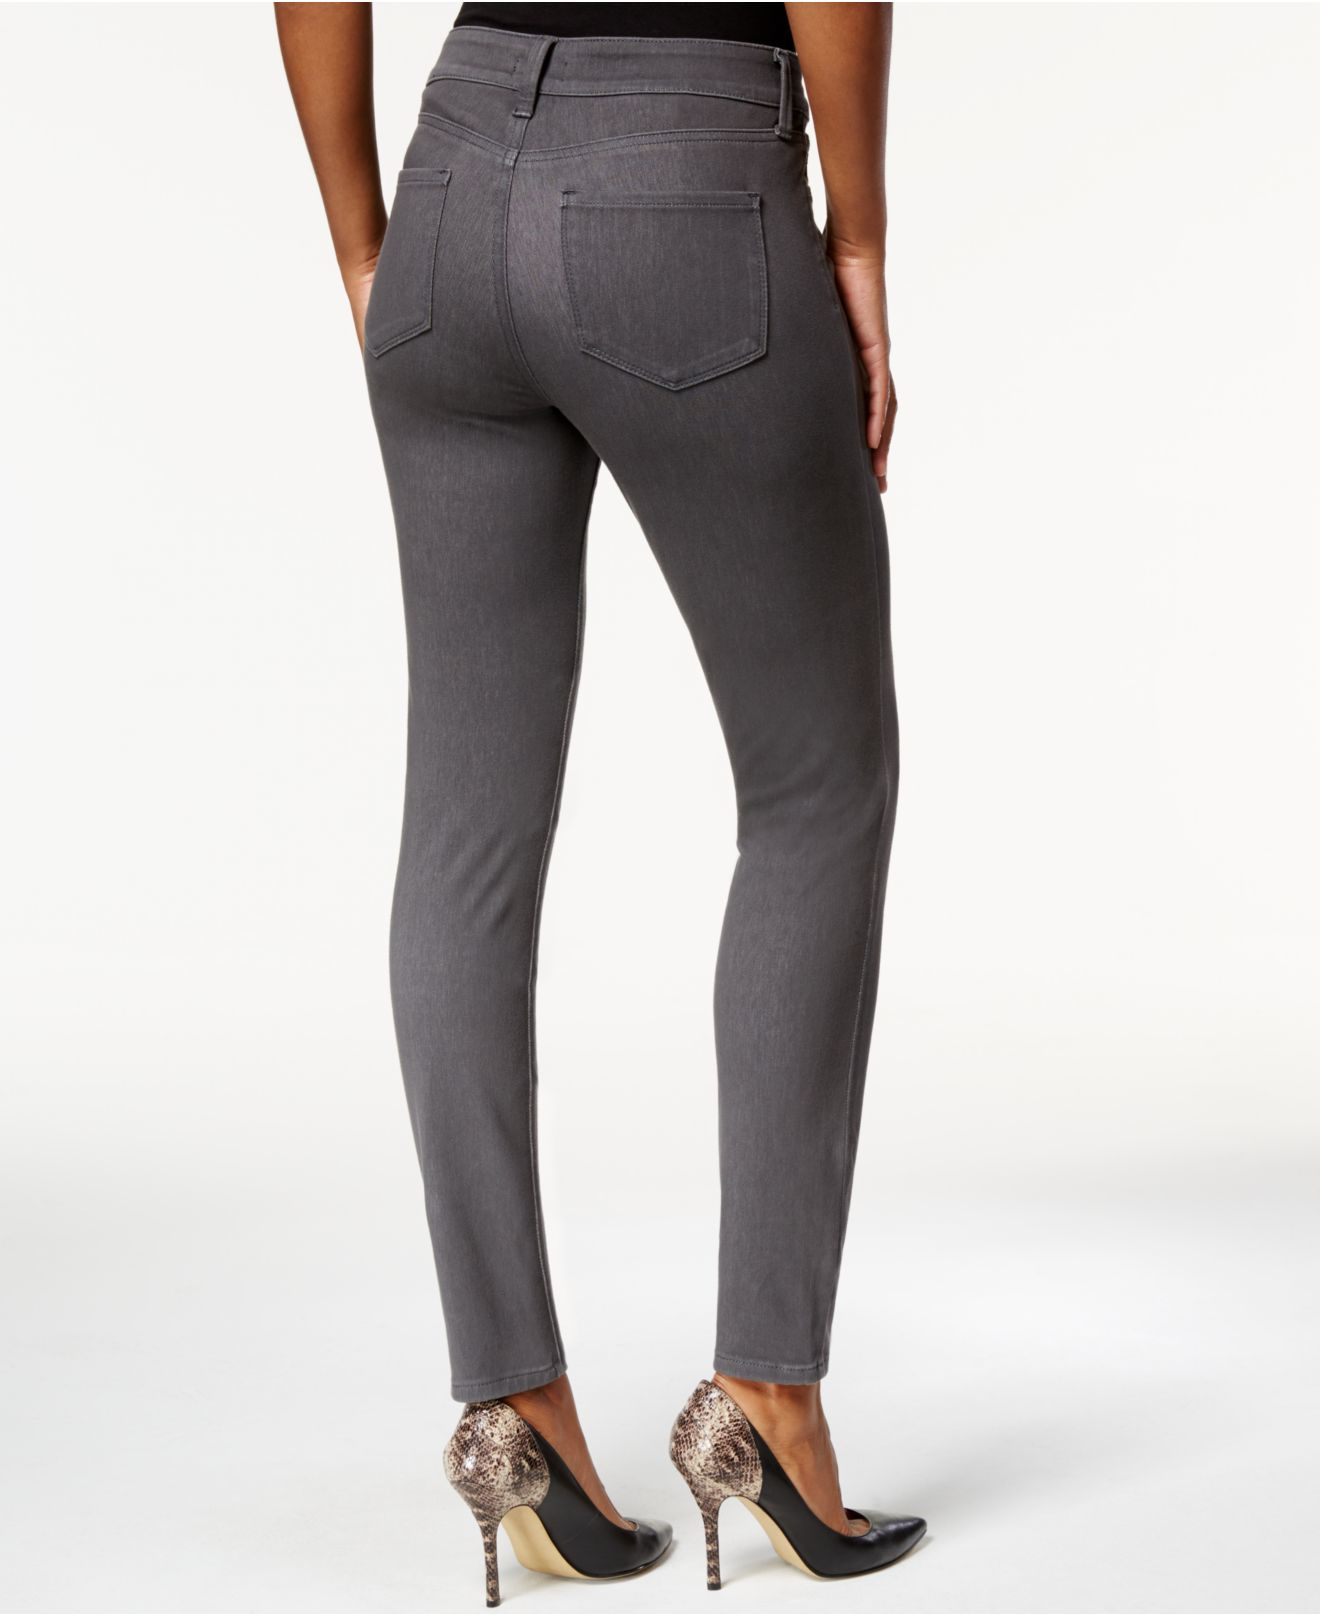 Lyst - NYDJ Alina Skinny Jeans in Gray